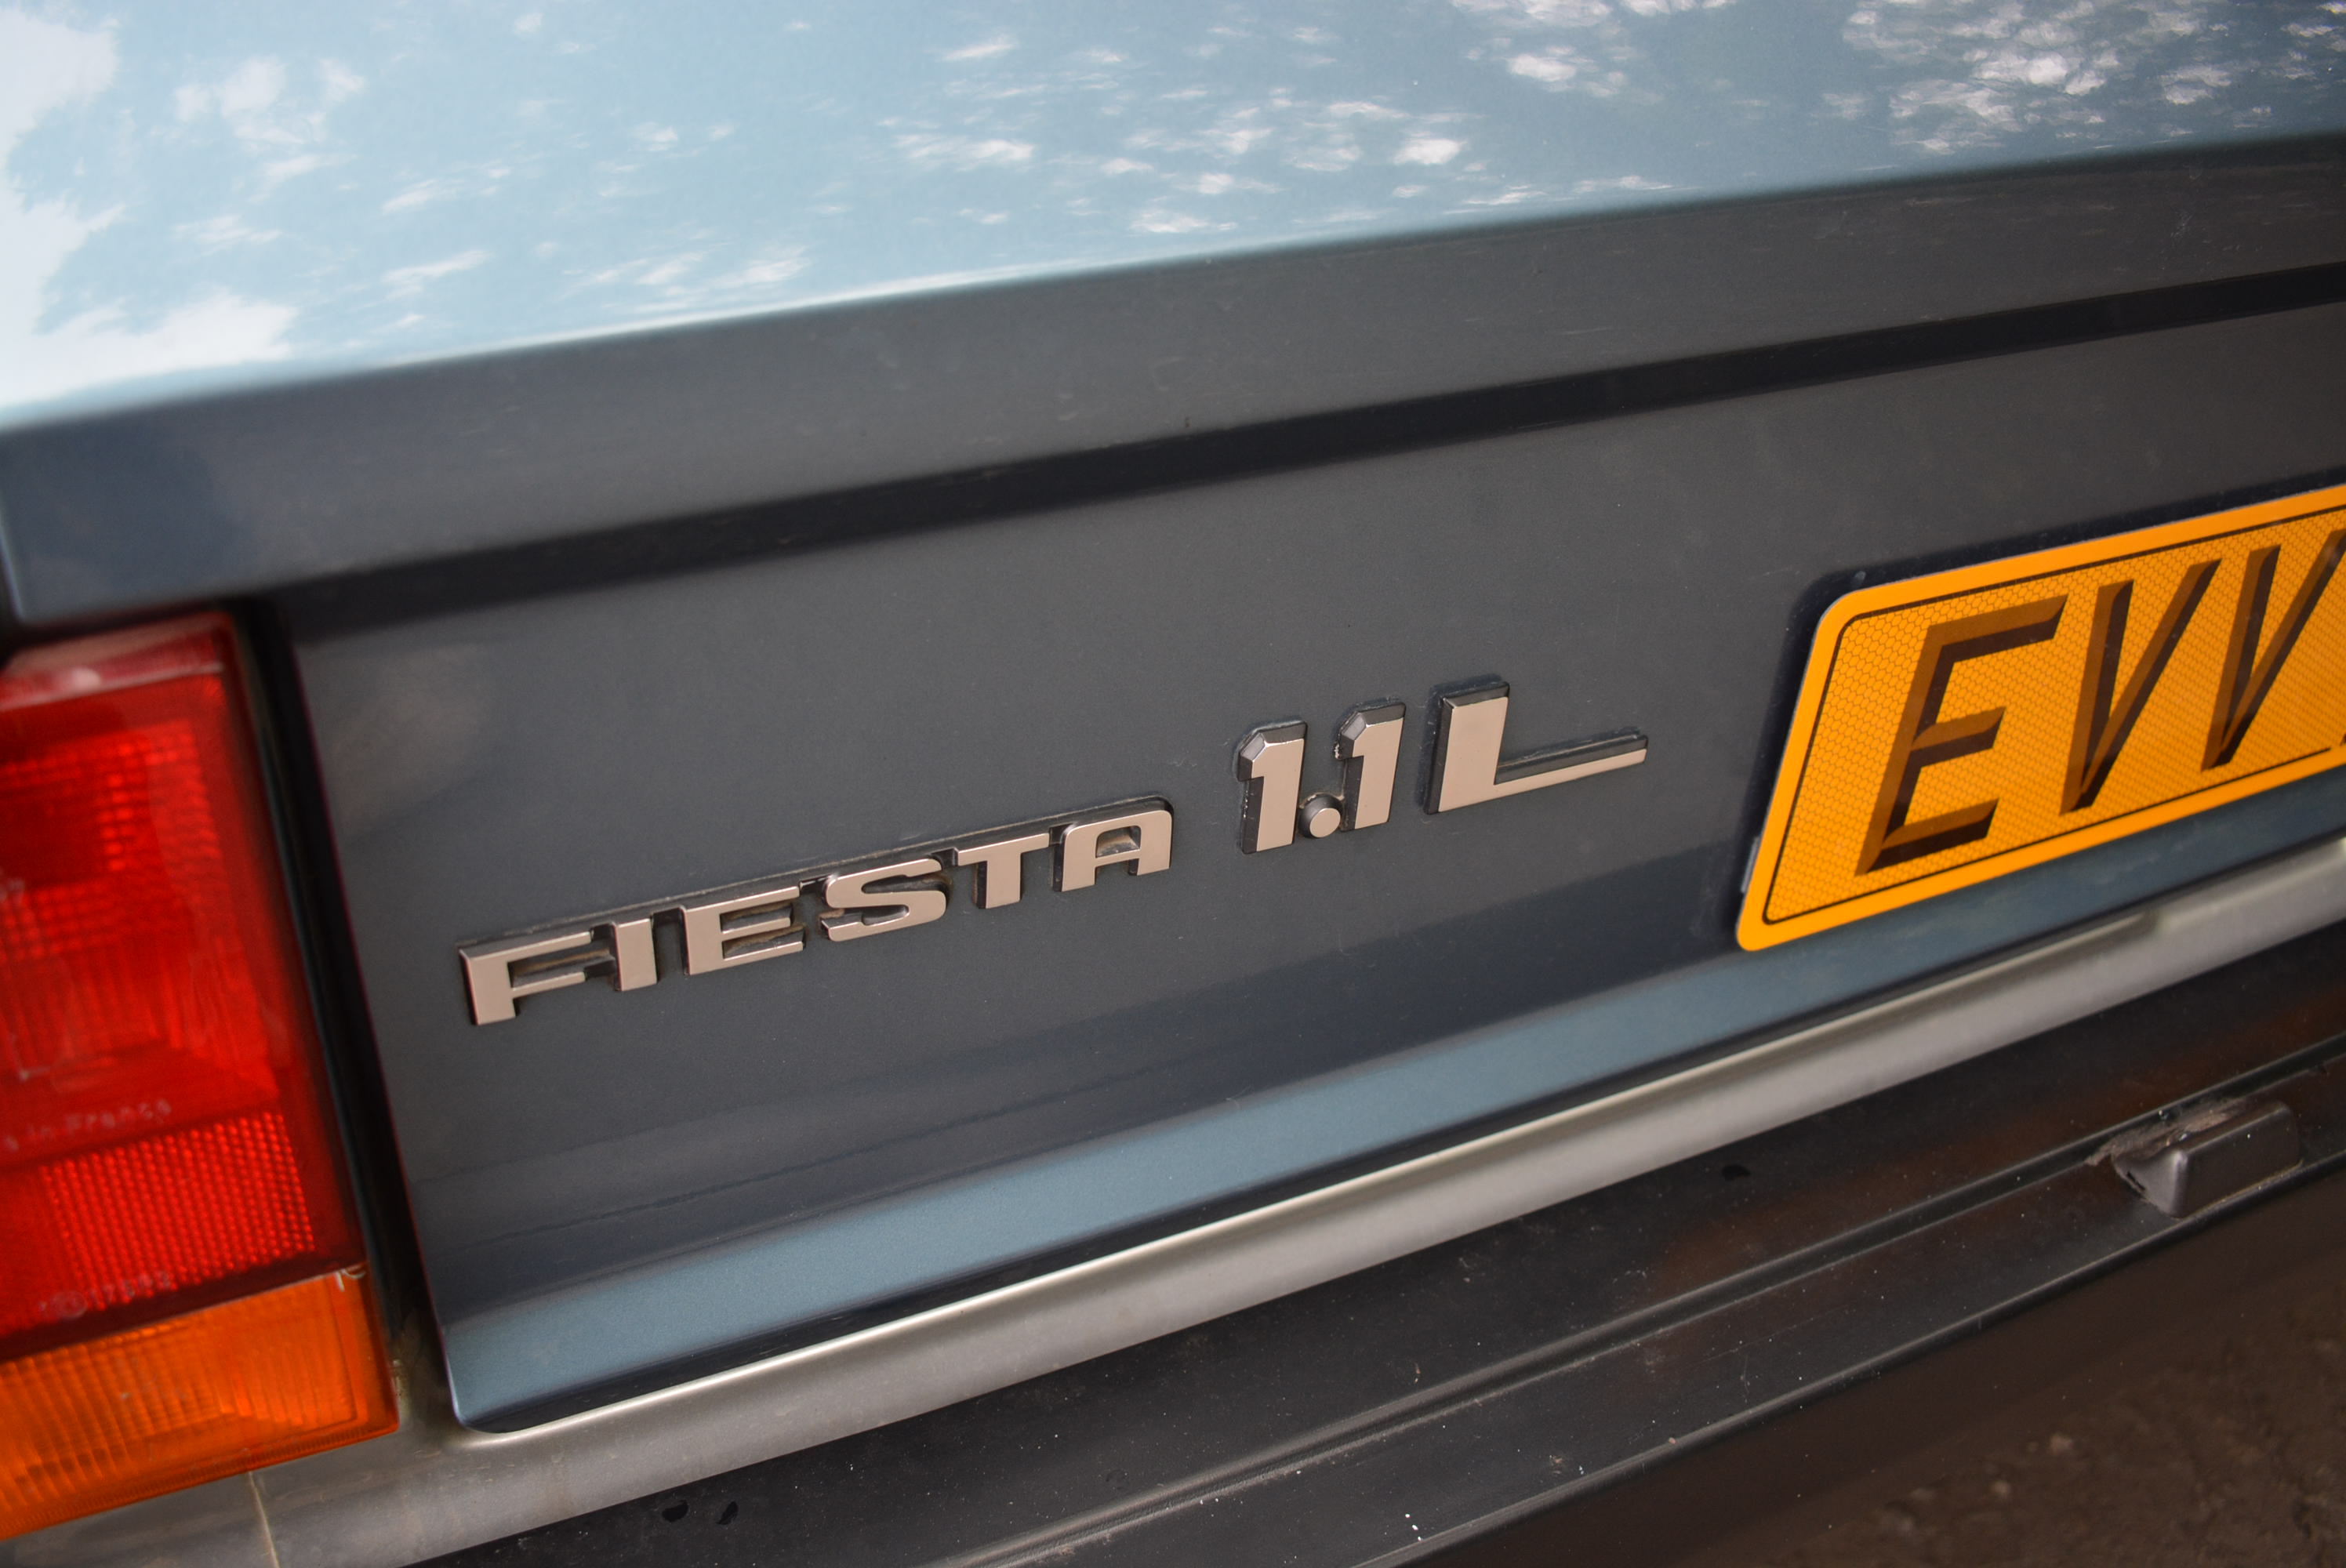 Ford Fiesta 1.1L Bravo